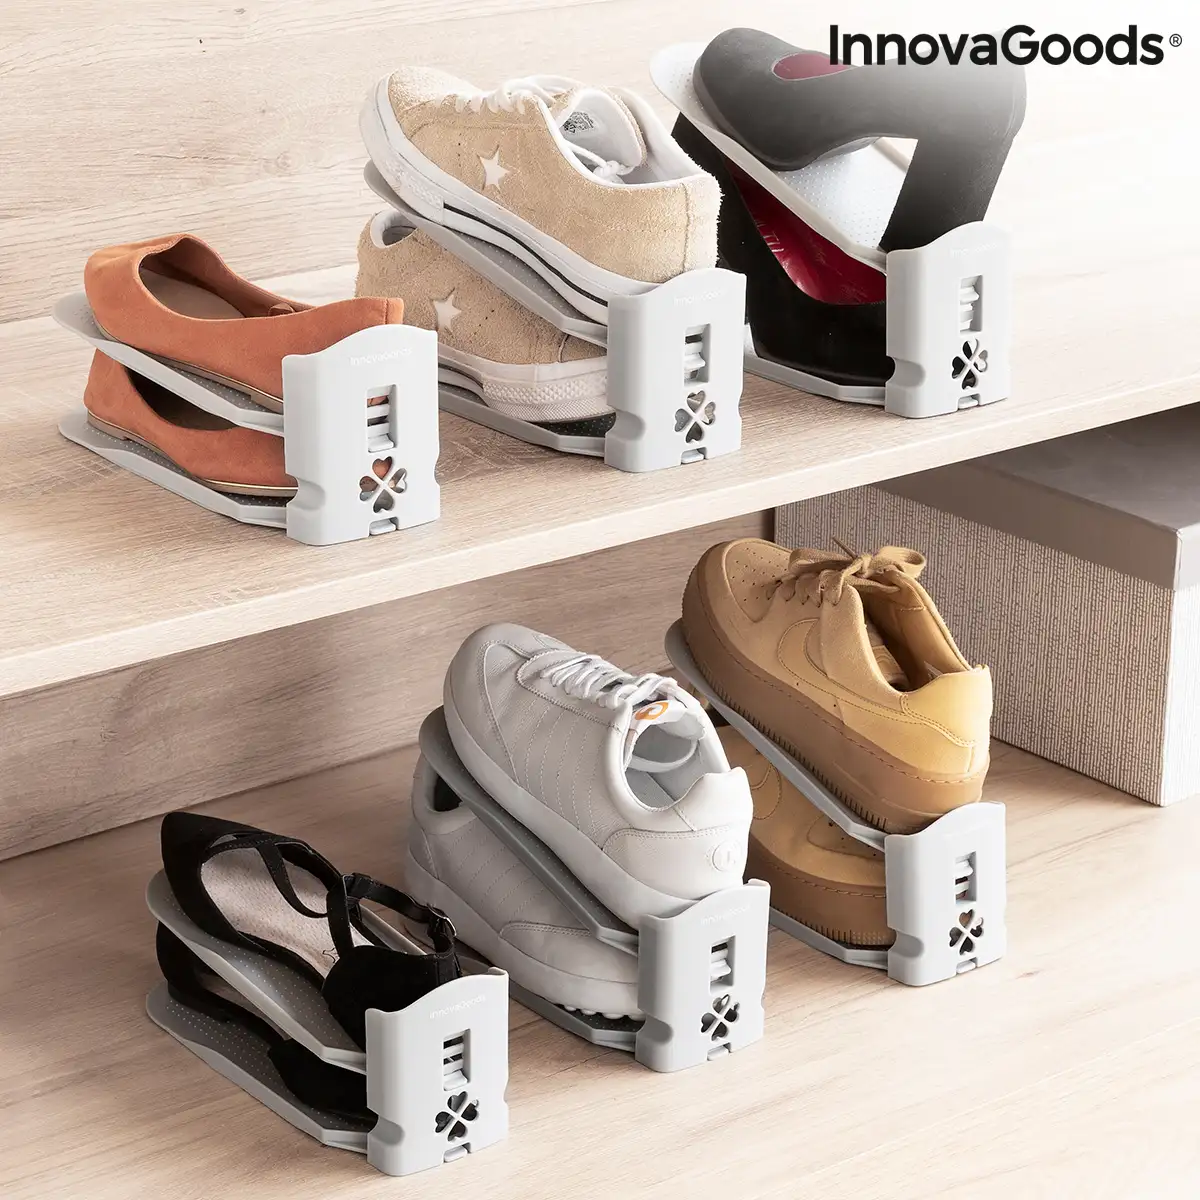 Range chaussures reglable sholzzer innovagoods 6 unites reconditionne a _4328. DIAYTAR SENEGAL - L'Art de Magasiner sans Limites. Naviguez à travers notre collection diversifiée pour trouver des produits qui élargiront vos horizons shopping.